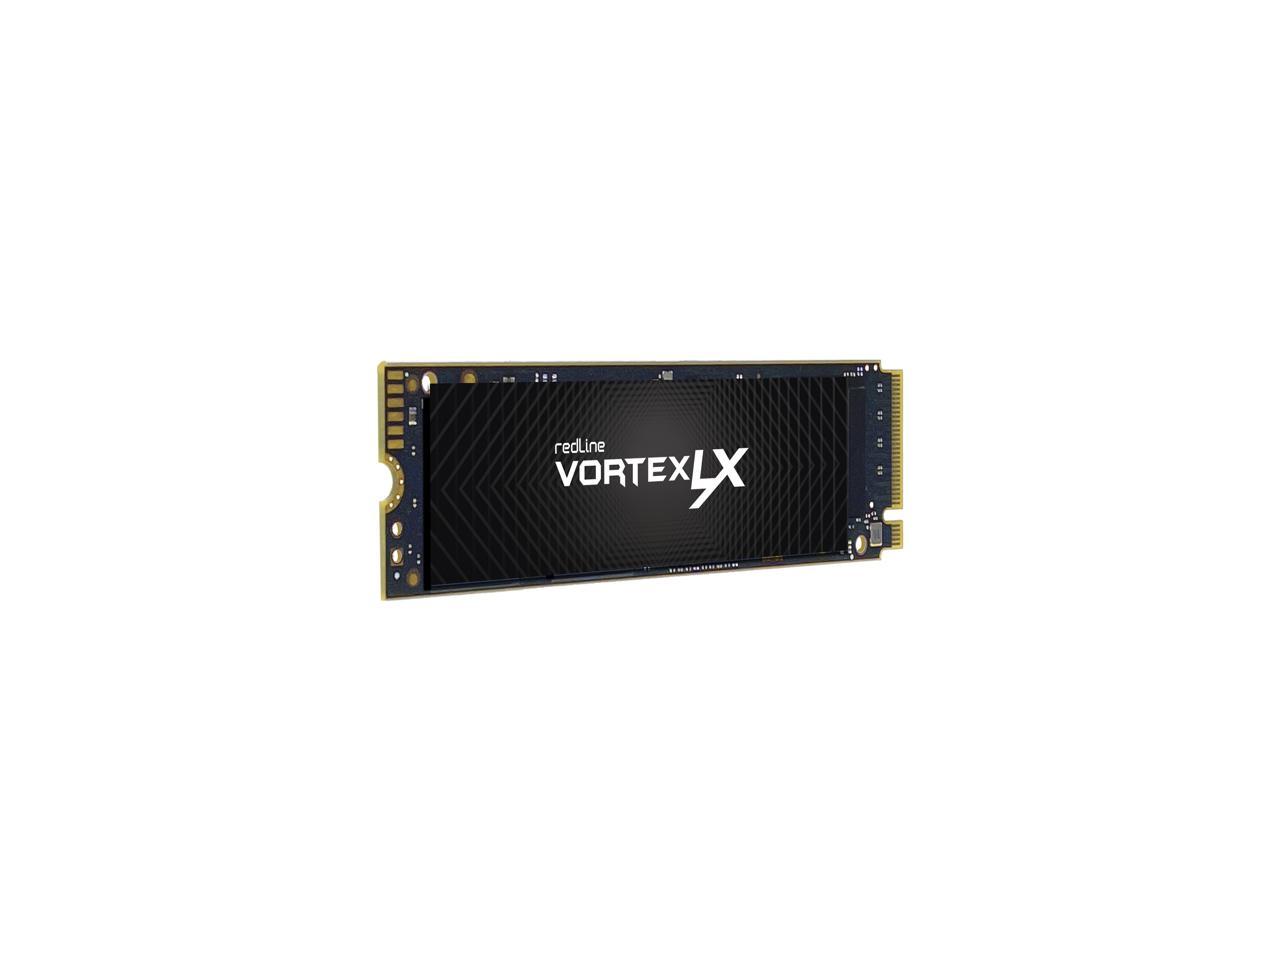 Mushkin Vortex-LX 1TB PCIe Gen4 x4 NVMe 1.4 M.2 (2280) Internal SSD - Up to 5,200MBs - Gaming PC/Laptop SSD - MKNSSDVL1TB-D8